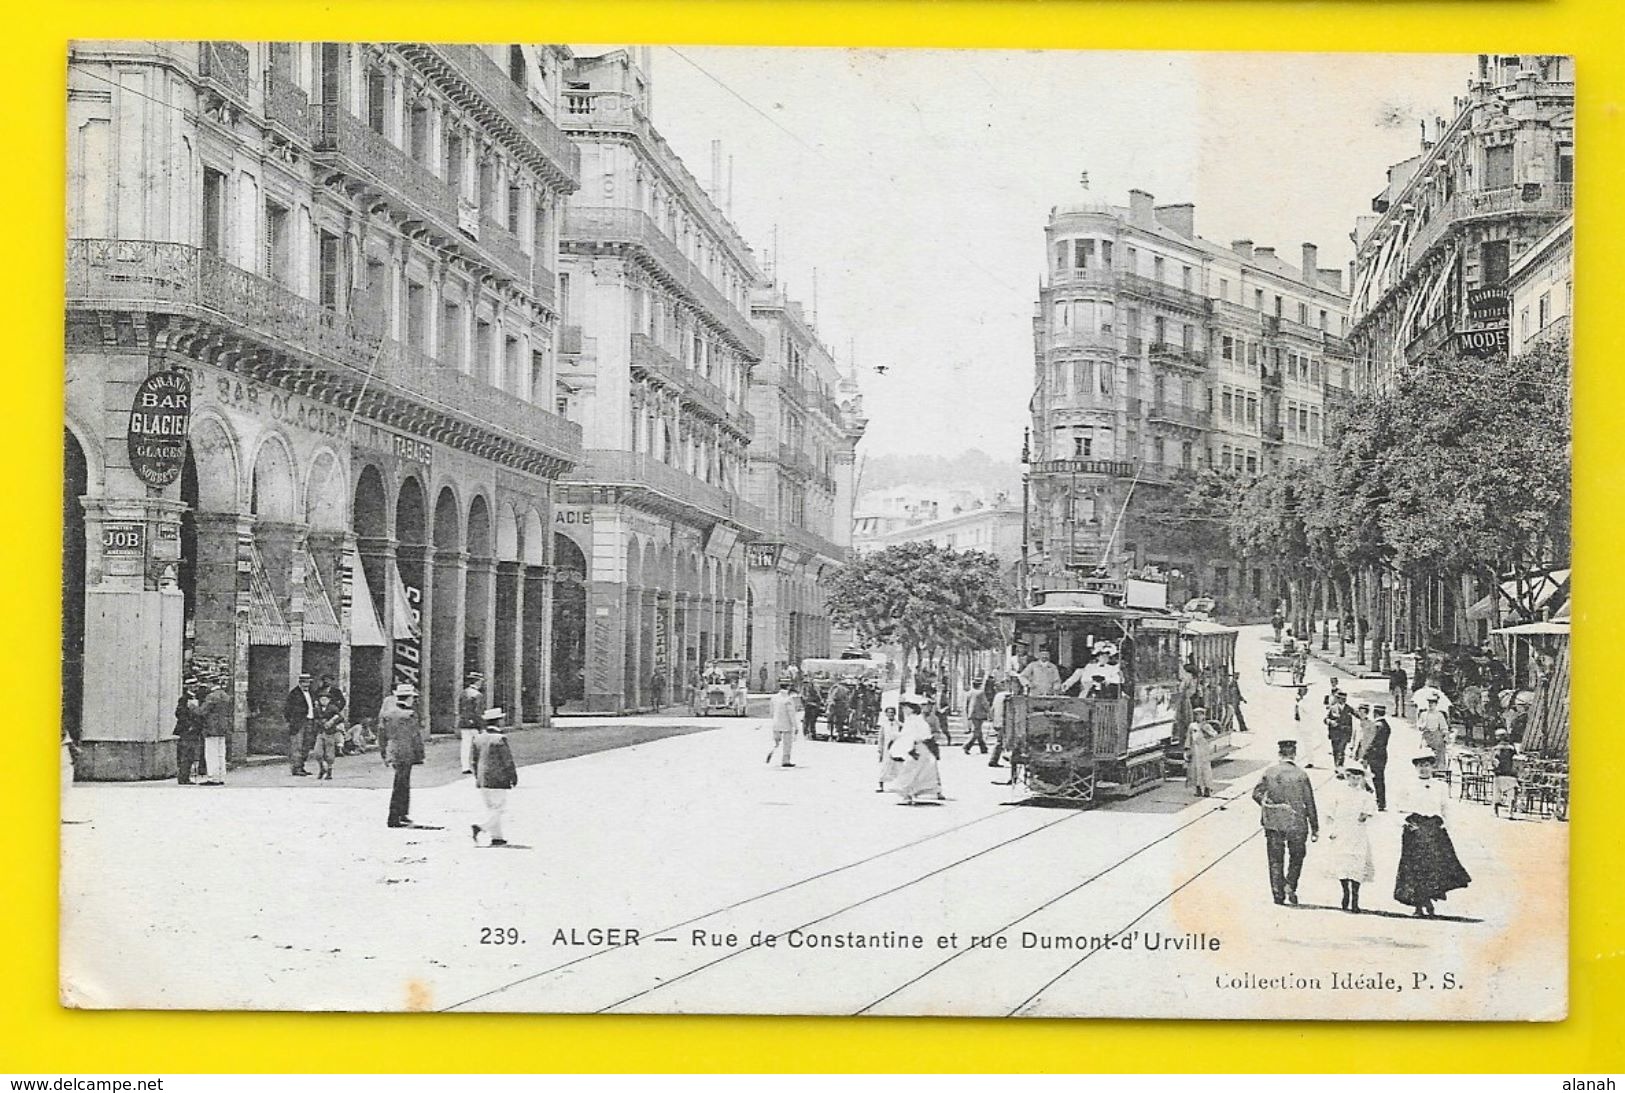 ALGER Rues De Constantine Et Dumont D'Urville (Collection Idéale PS) Algérie - Algiers